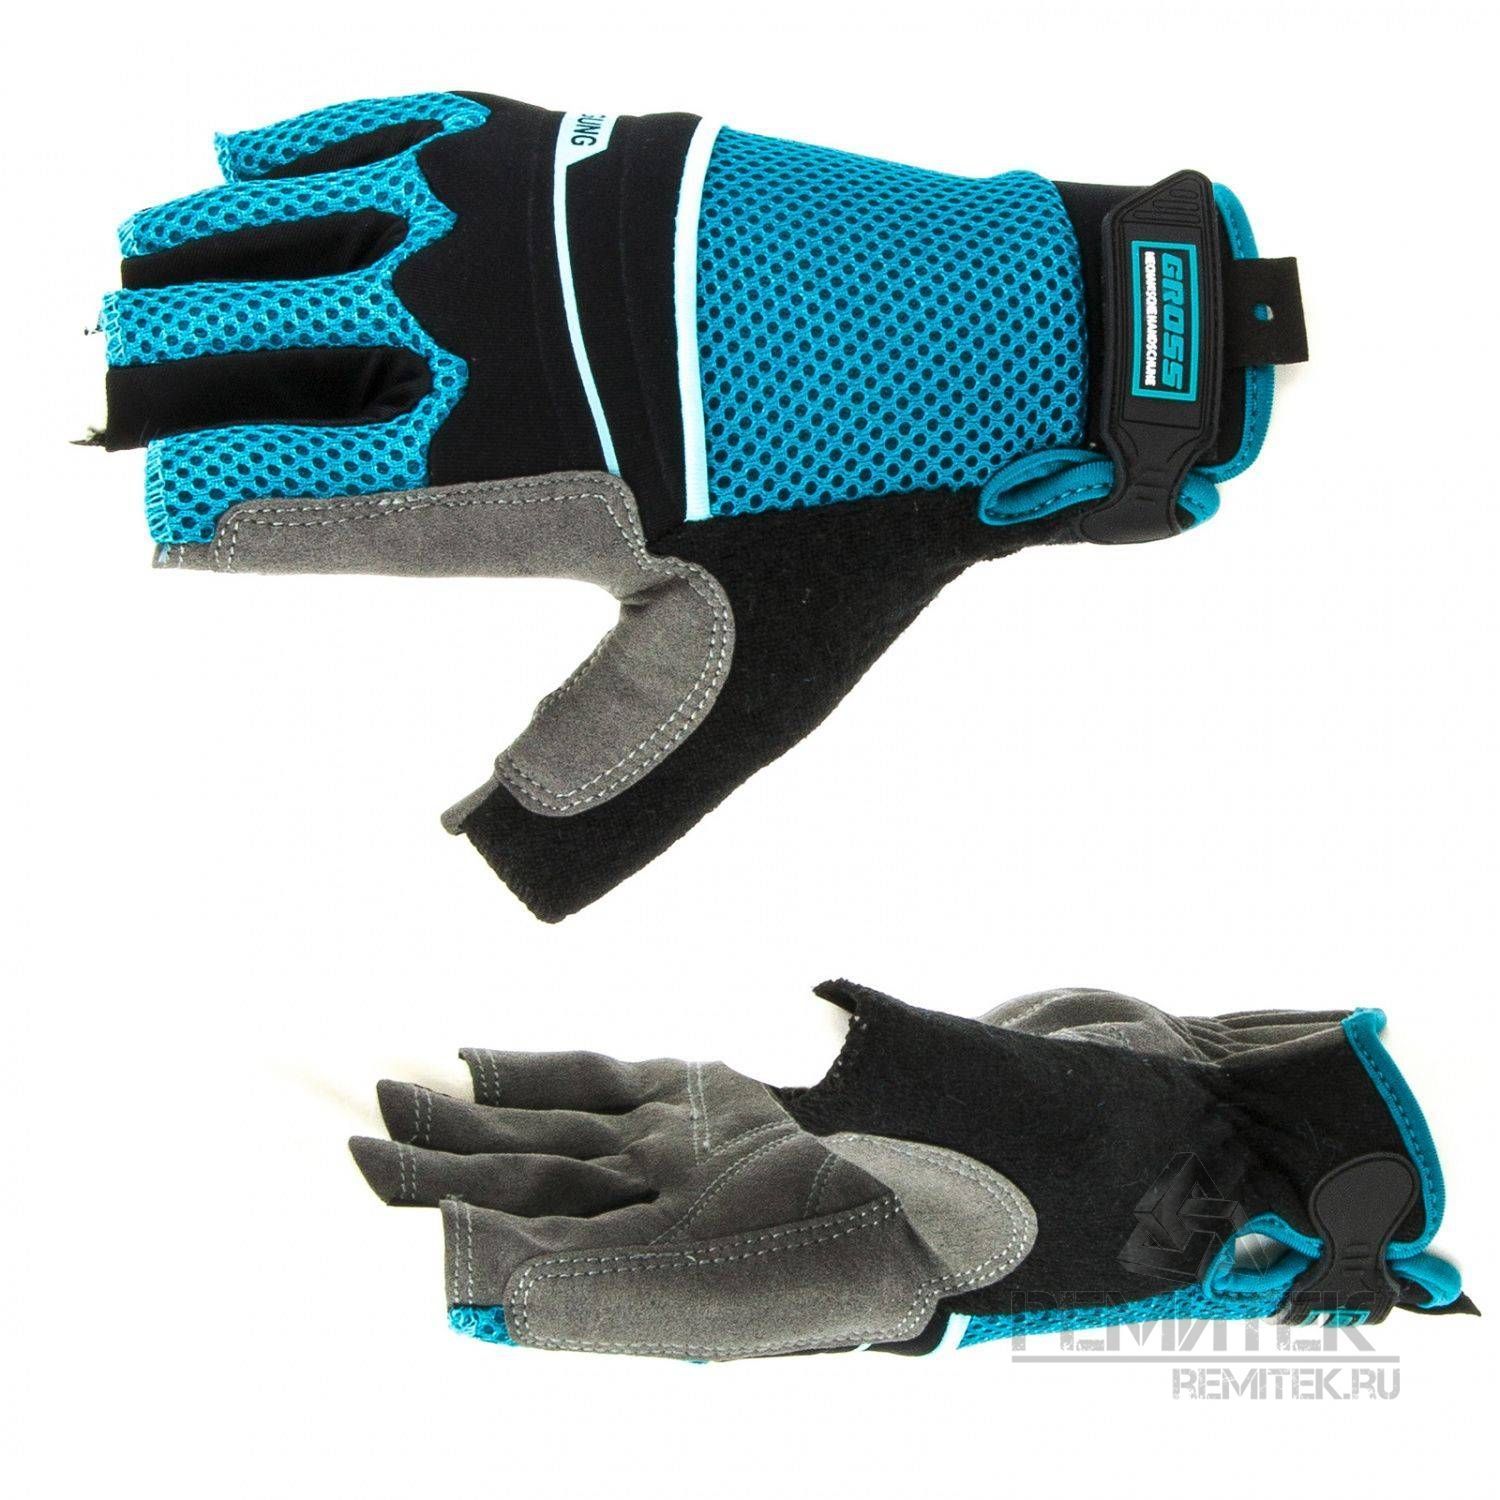 Перчатки комбинированные облегченные, открытые пальцы, AKTIV, М// Gross